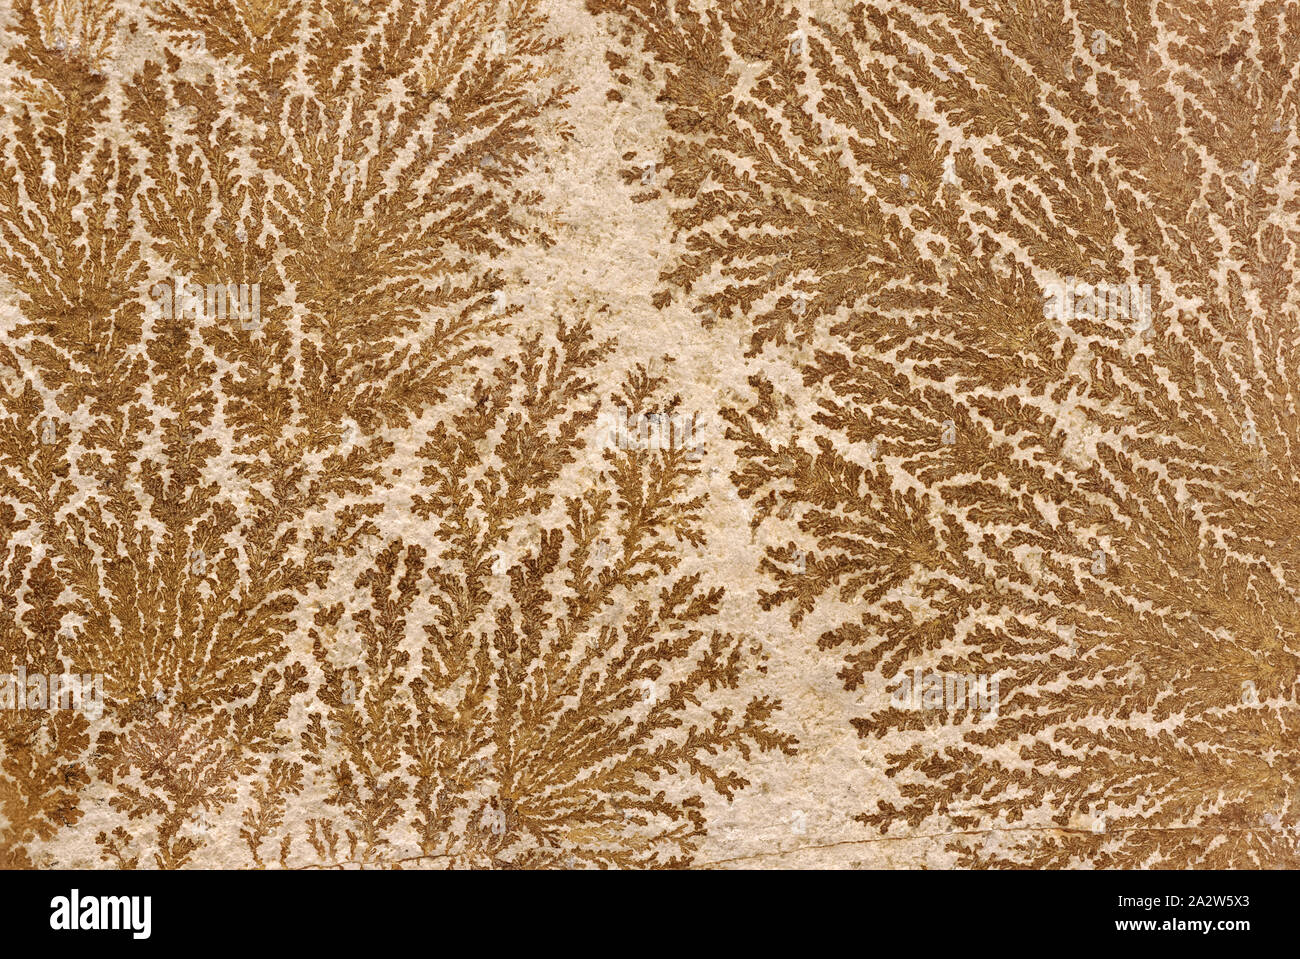 Gli sfondi e texture: astratto albero fossilizzato-simili pattern su una superficie di pietra, sfondo naturale Foto Stock